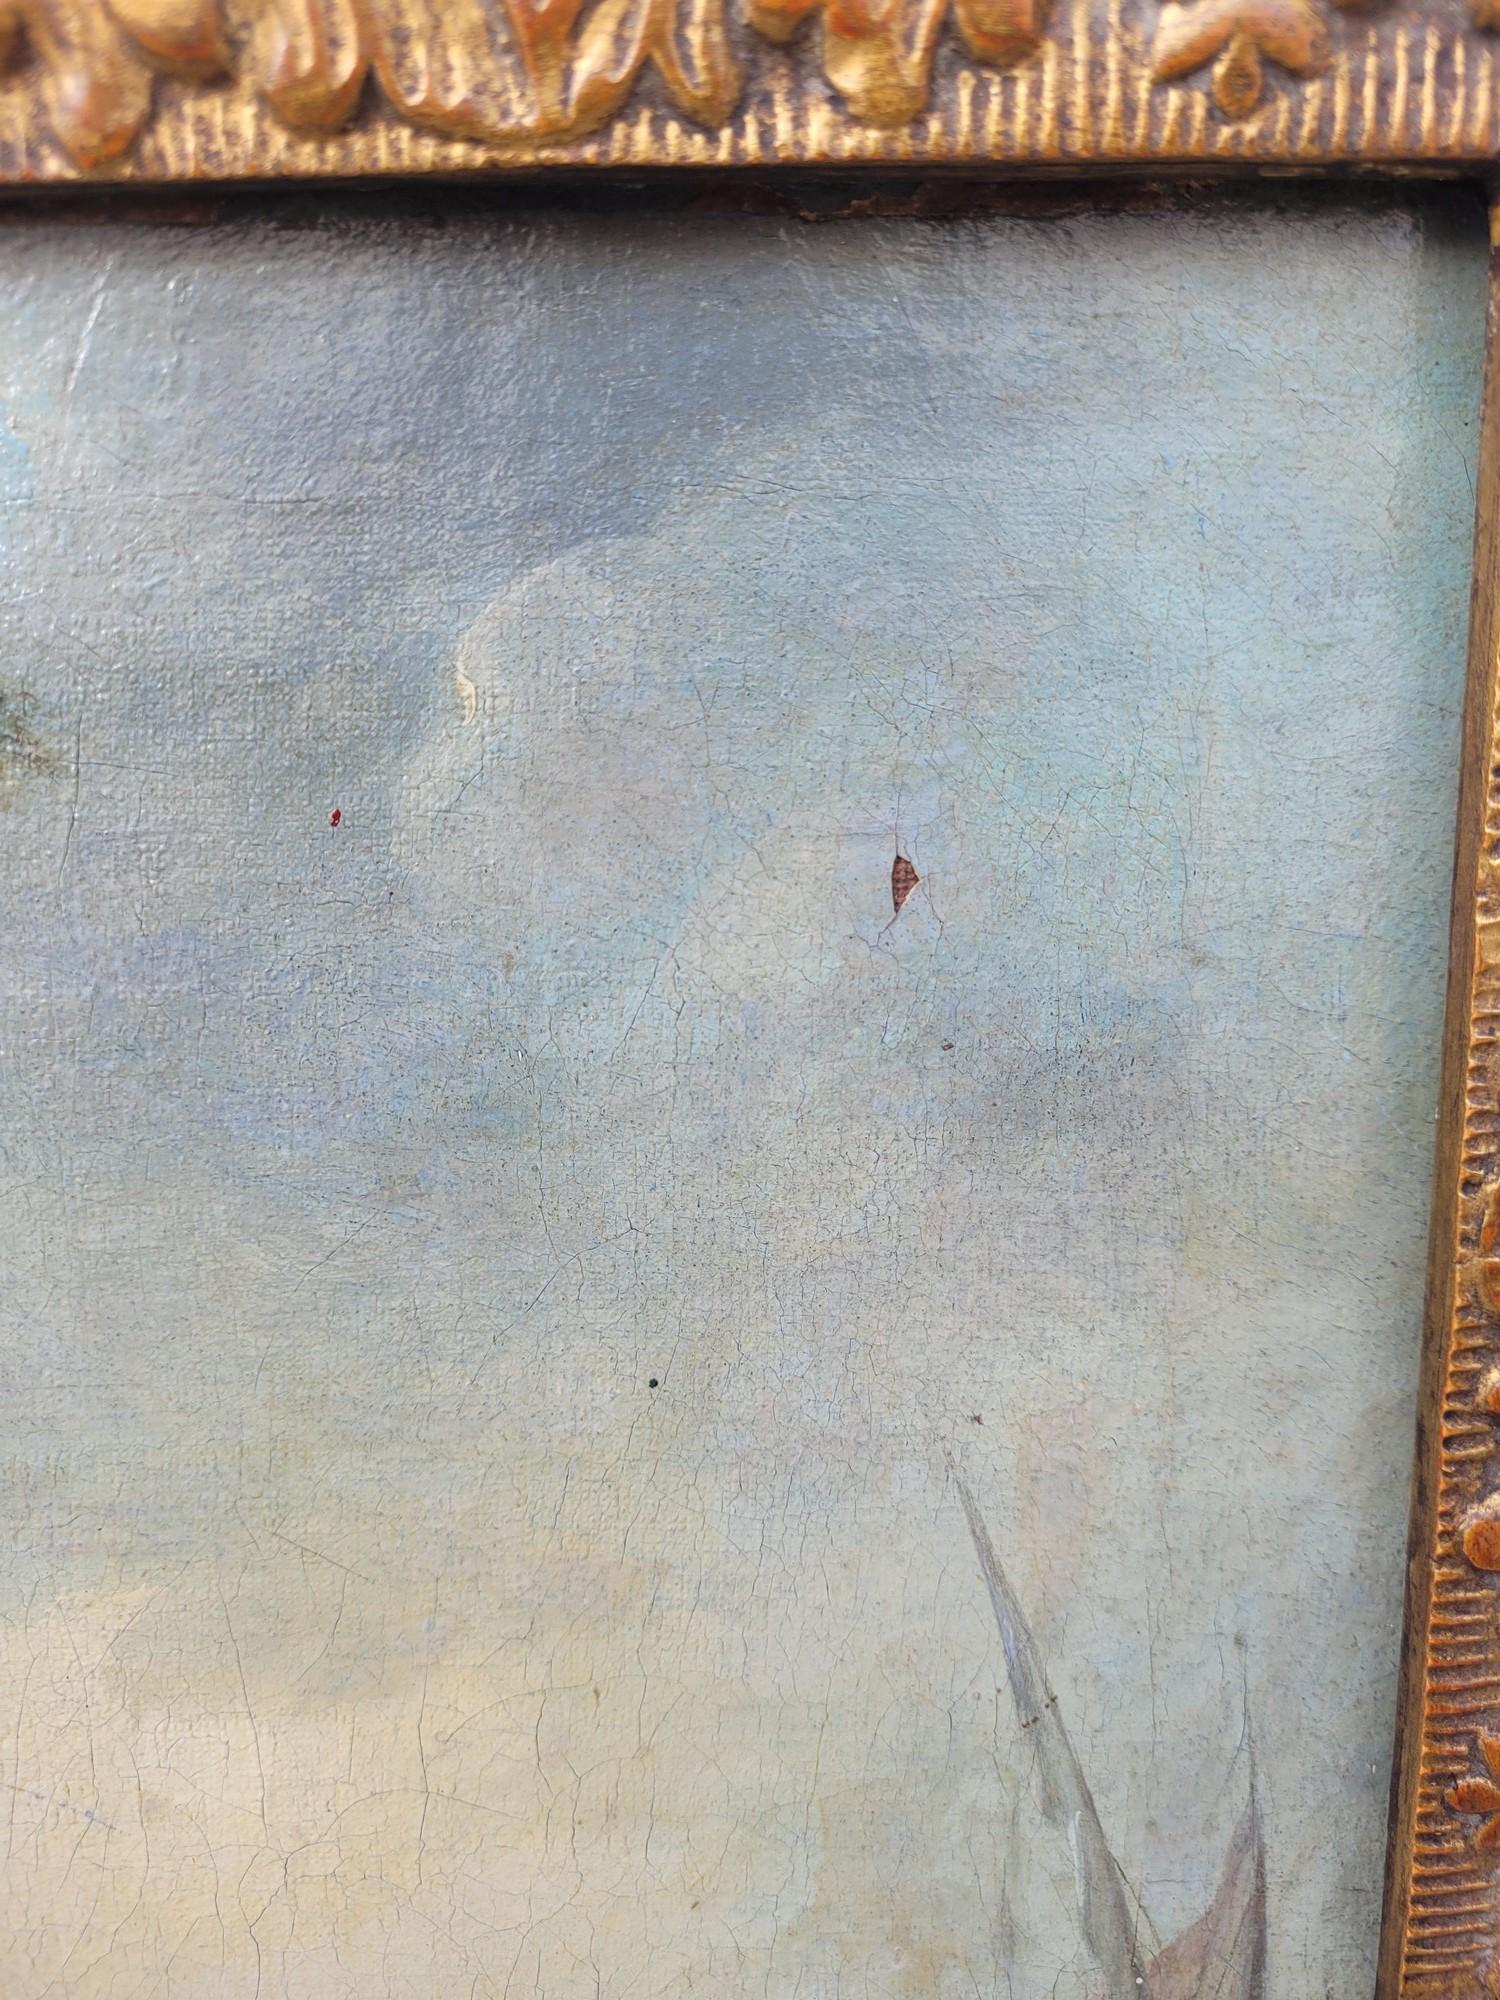 Hübsches Öl auf Leinwand, belebt von Fischern, die ihr Netz ans Ufer bringen, unter dem Blick einer jungen Frau und ihres Kindes.
Im Hintergrund sind verschiedene Gebäude und das Meer zu sehen.

Französisches Öl auf Leinwand, aus dem 18.